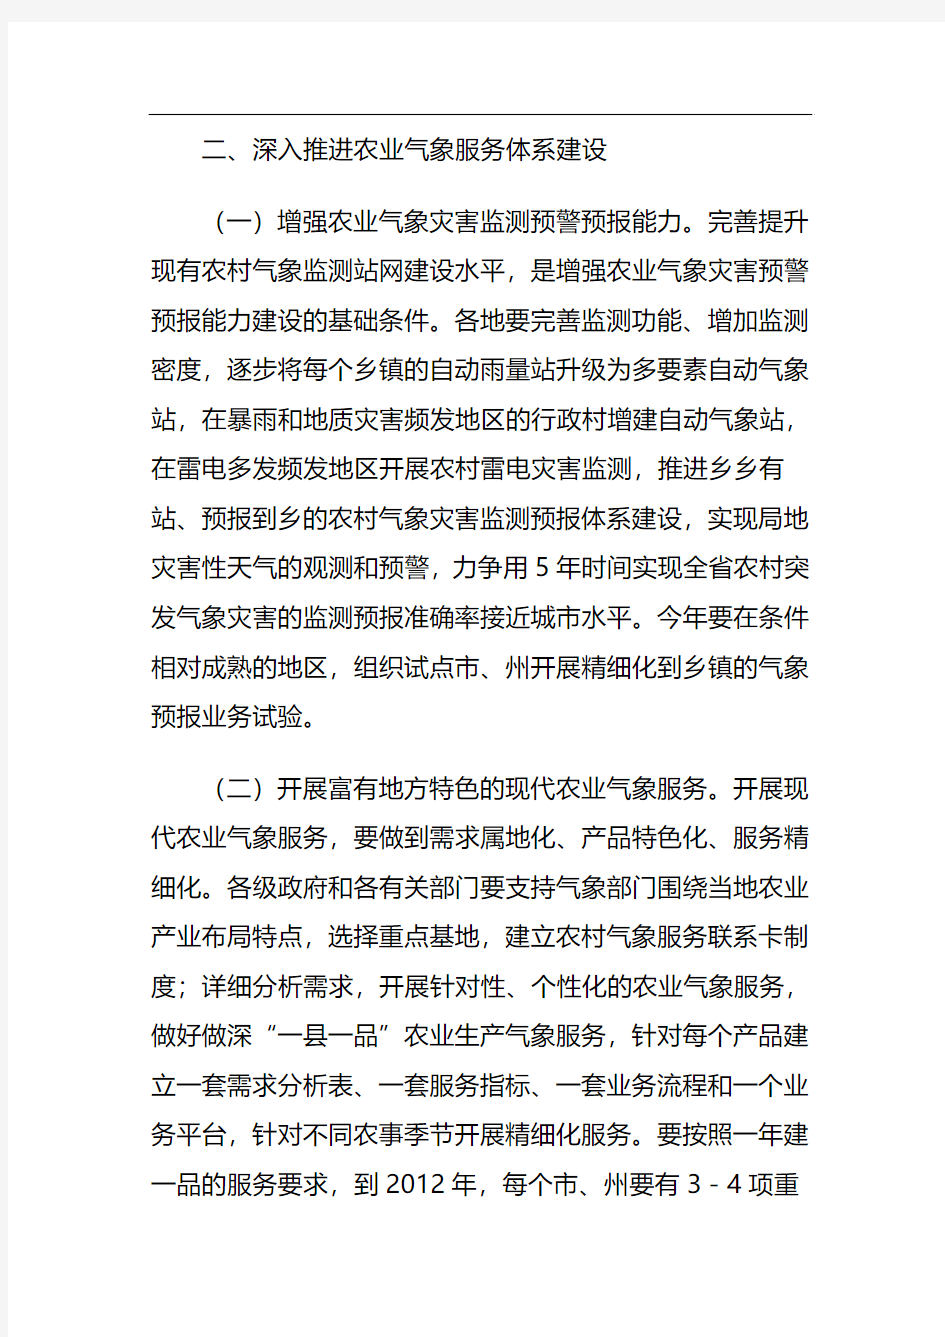 湖北省人民政府办公厅关于加强农业气象服务体系和农村气象灾害防御体系建设的意见(106号文件)